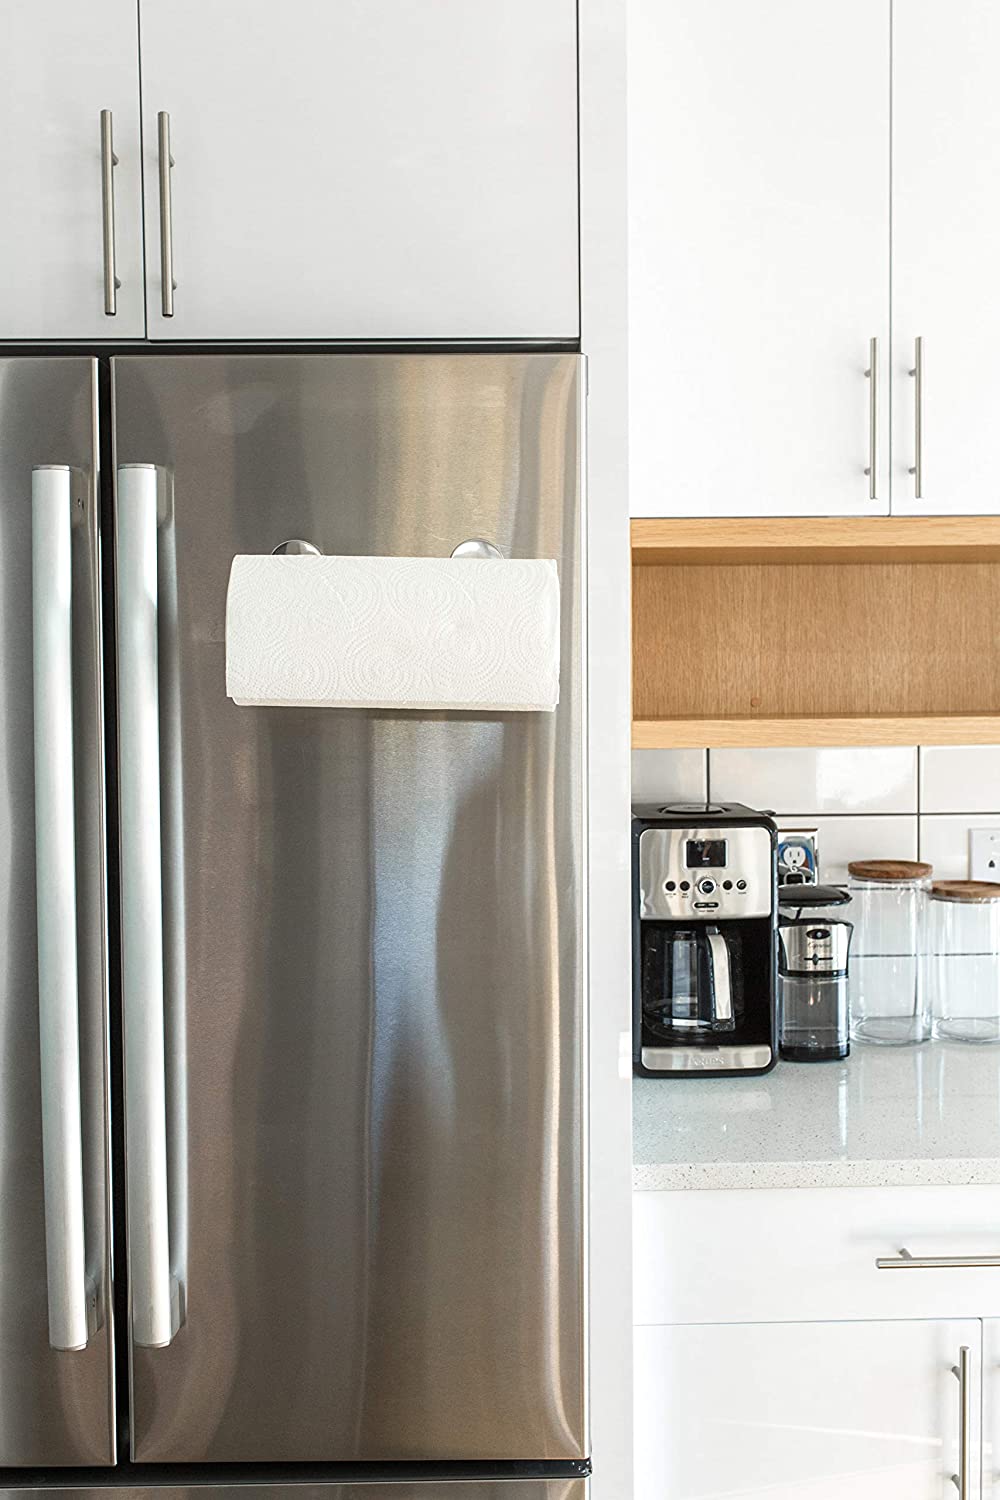 Magnetic Paper Towel Holder For Refrigerator Kitchen Fridge Metal Cabinet  Grill